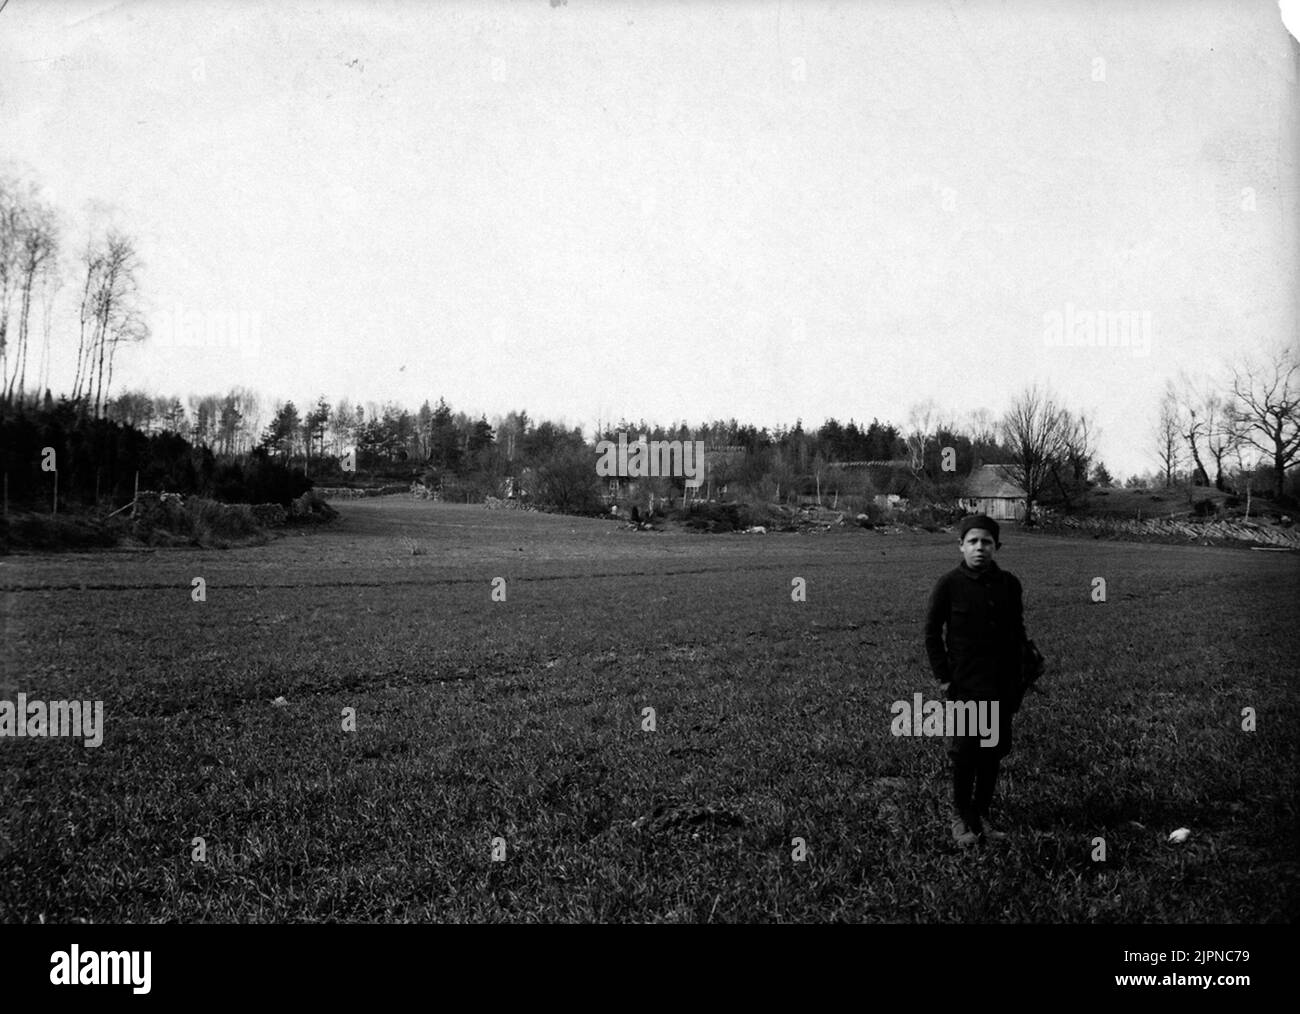 Crochet terrain for tree larch. May 13, 1907. Häckningsterräng för trädlärka. 13 maj 1907. Stock Photo